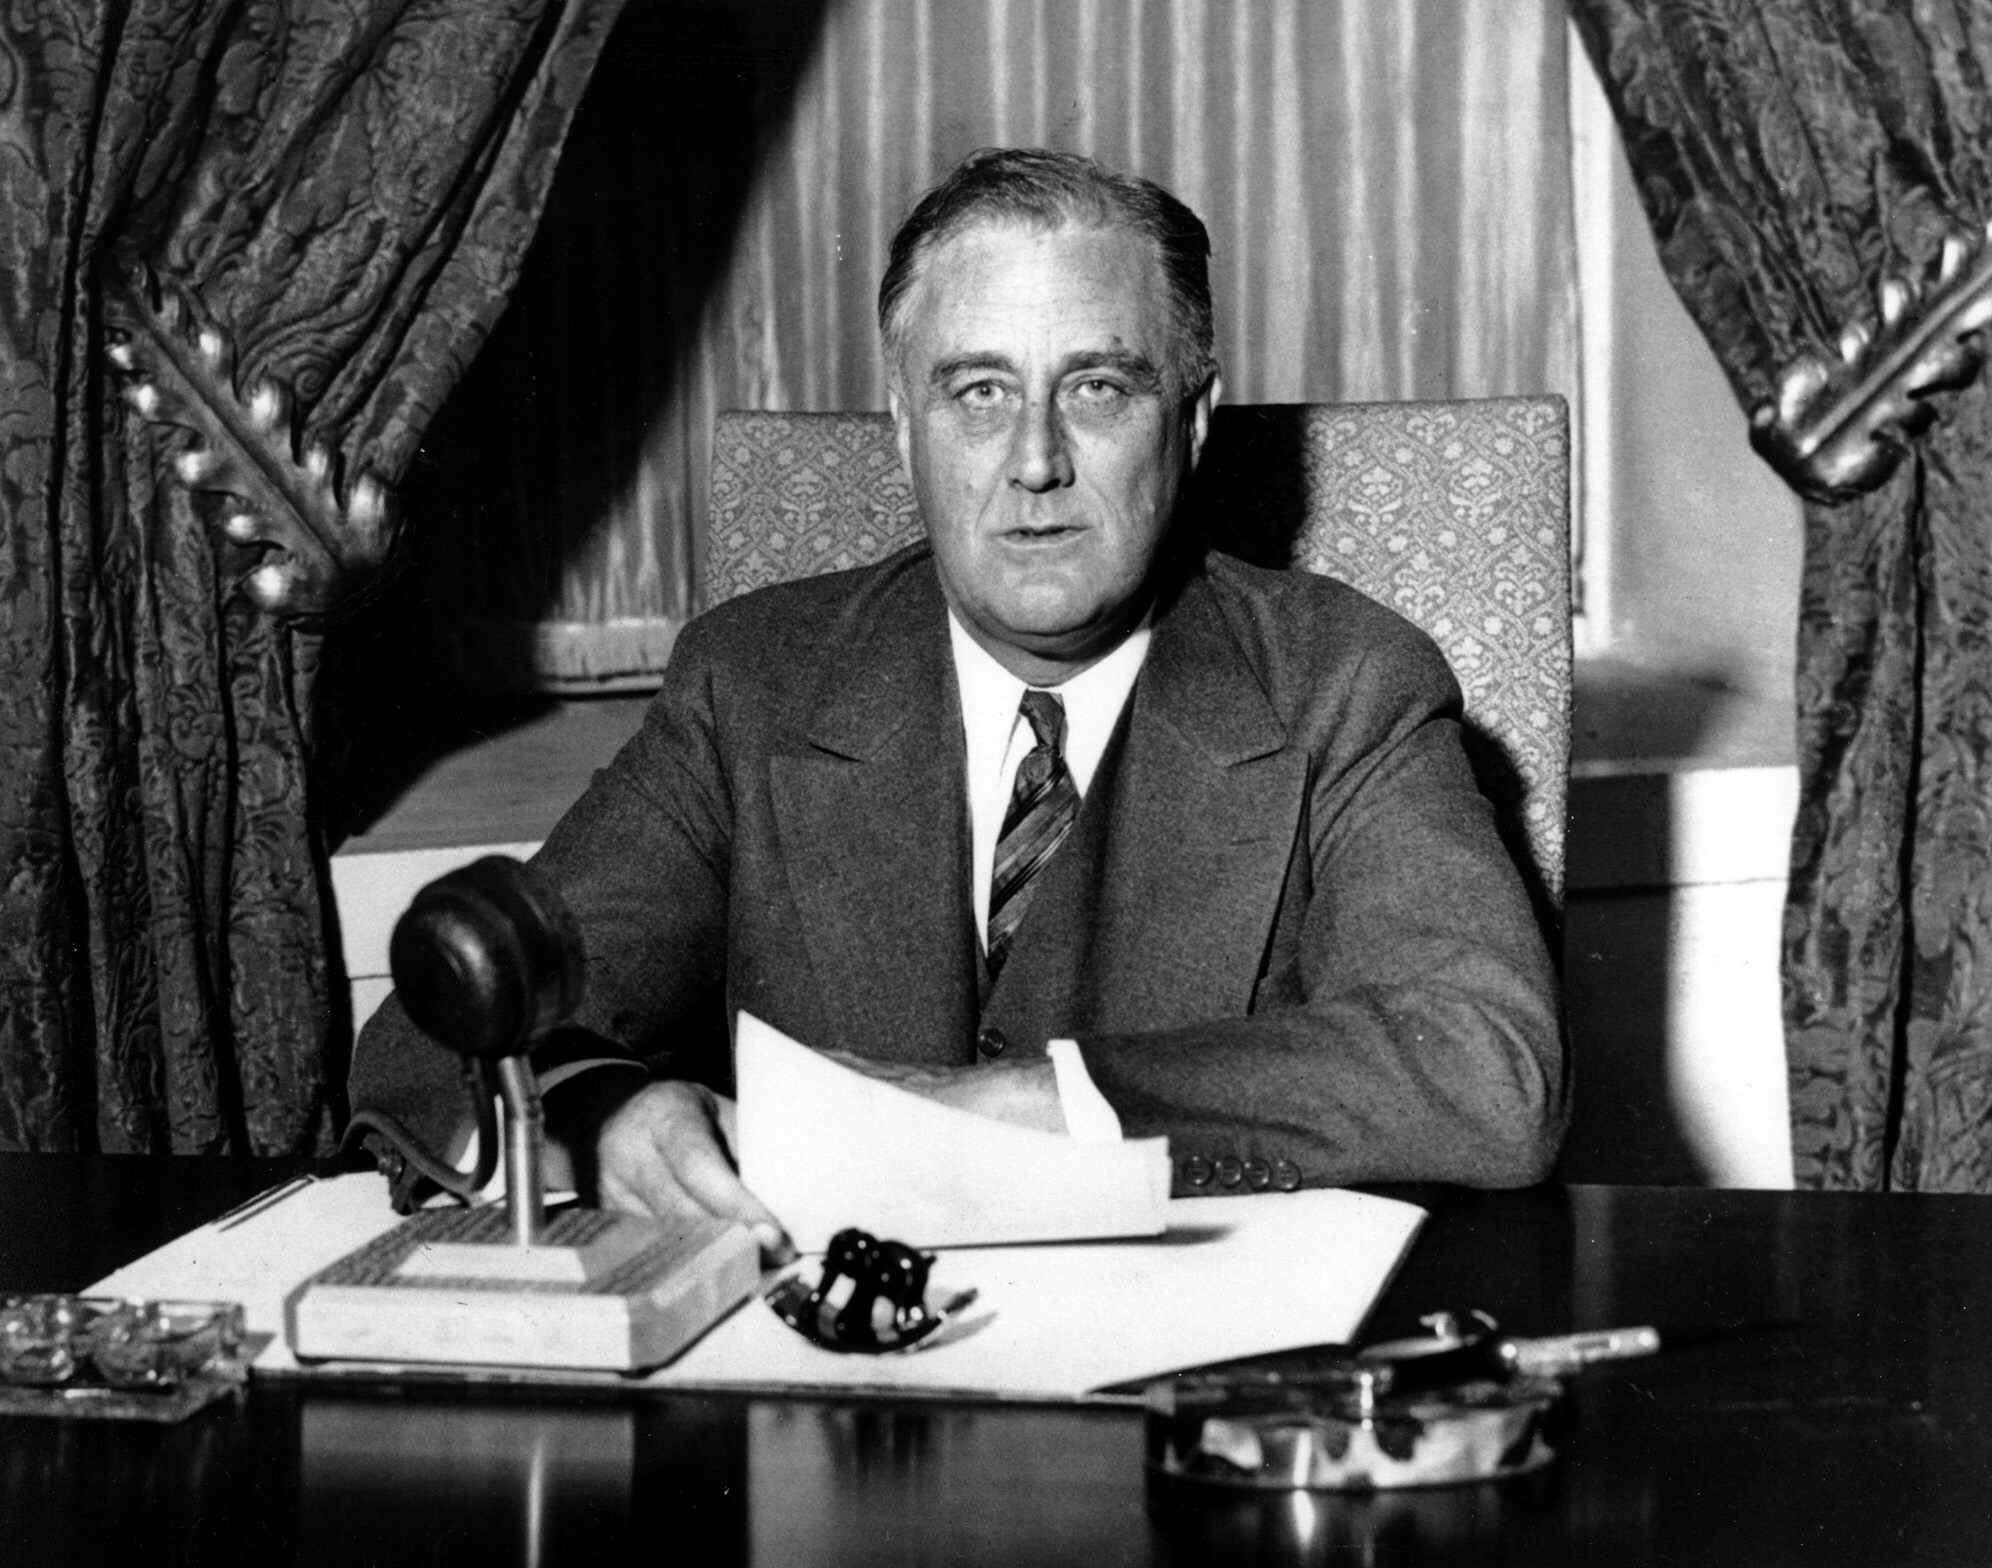 United States President Franklin D. Roosevelt